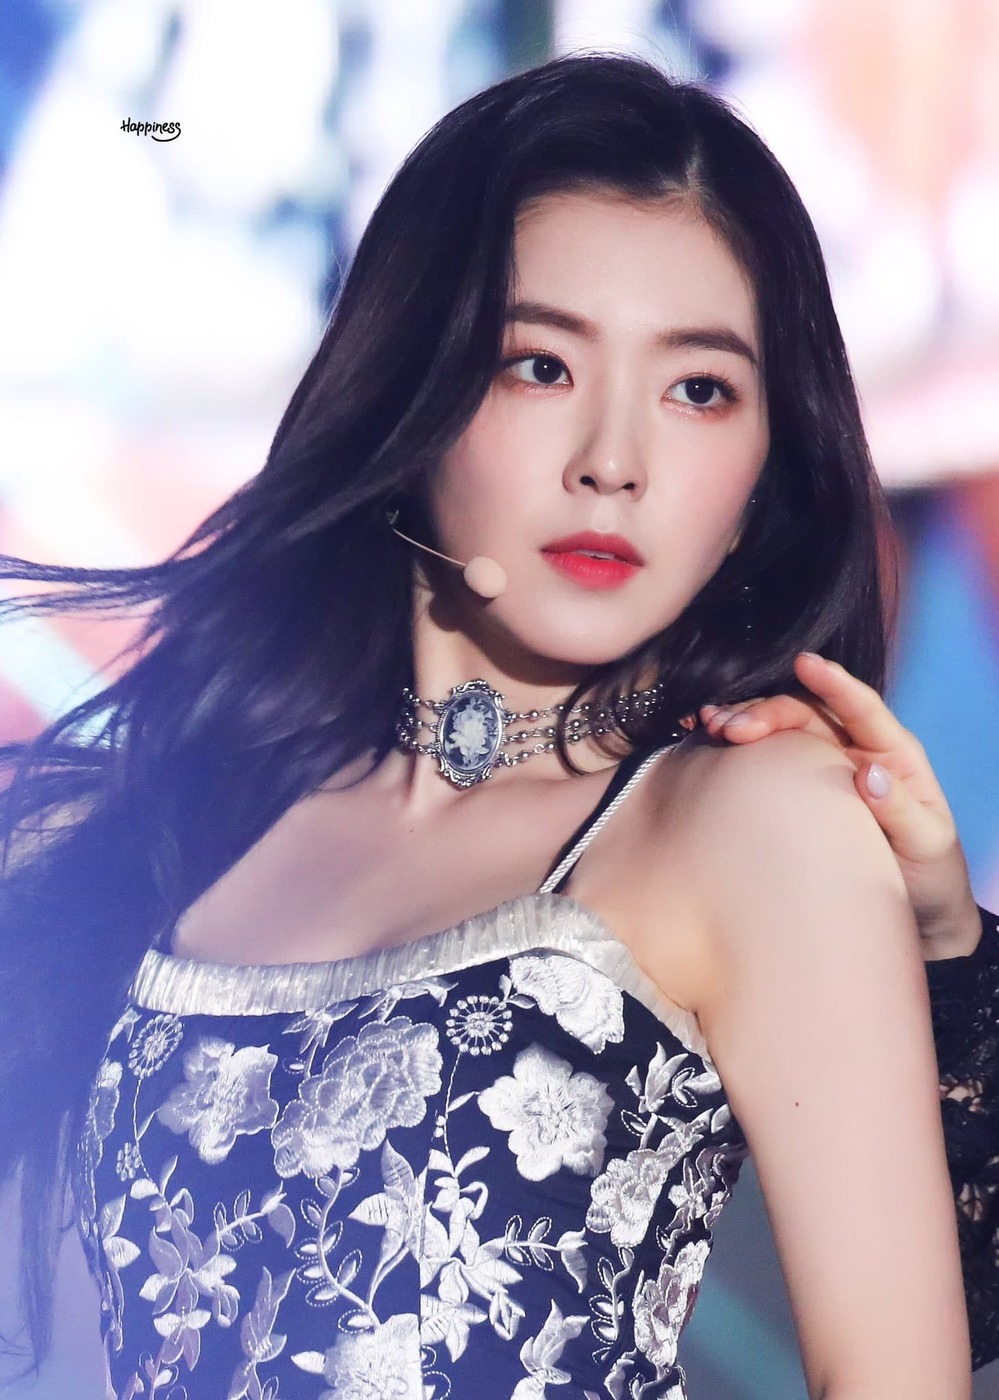  
Irene luôn được xem là mỹ nhân Kpop nổi tiếng, được biết đến với nhan sắc xinh đẹp, thần thái sang chảnh. (Ảnh: Soompi)